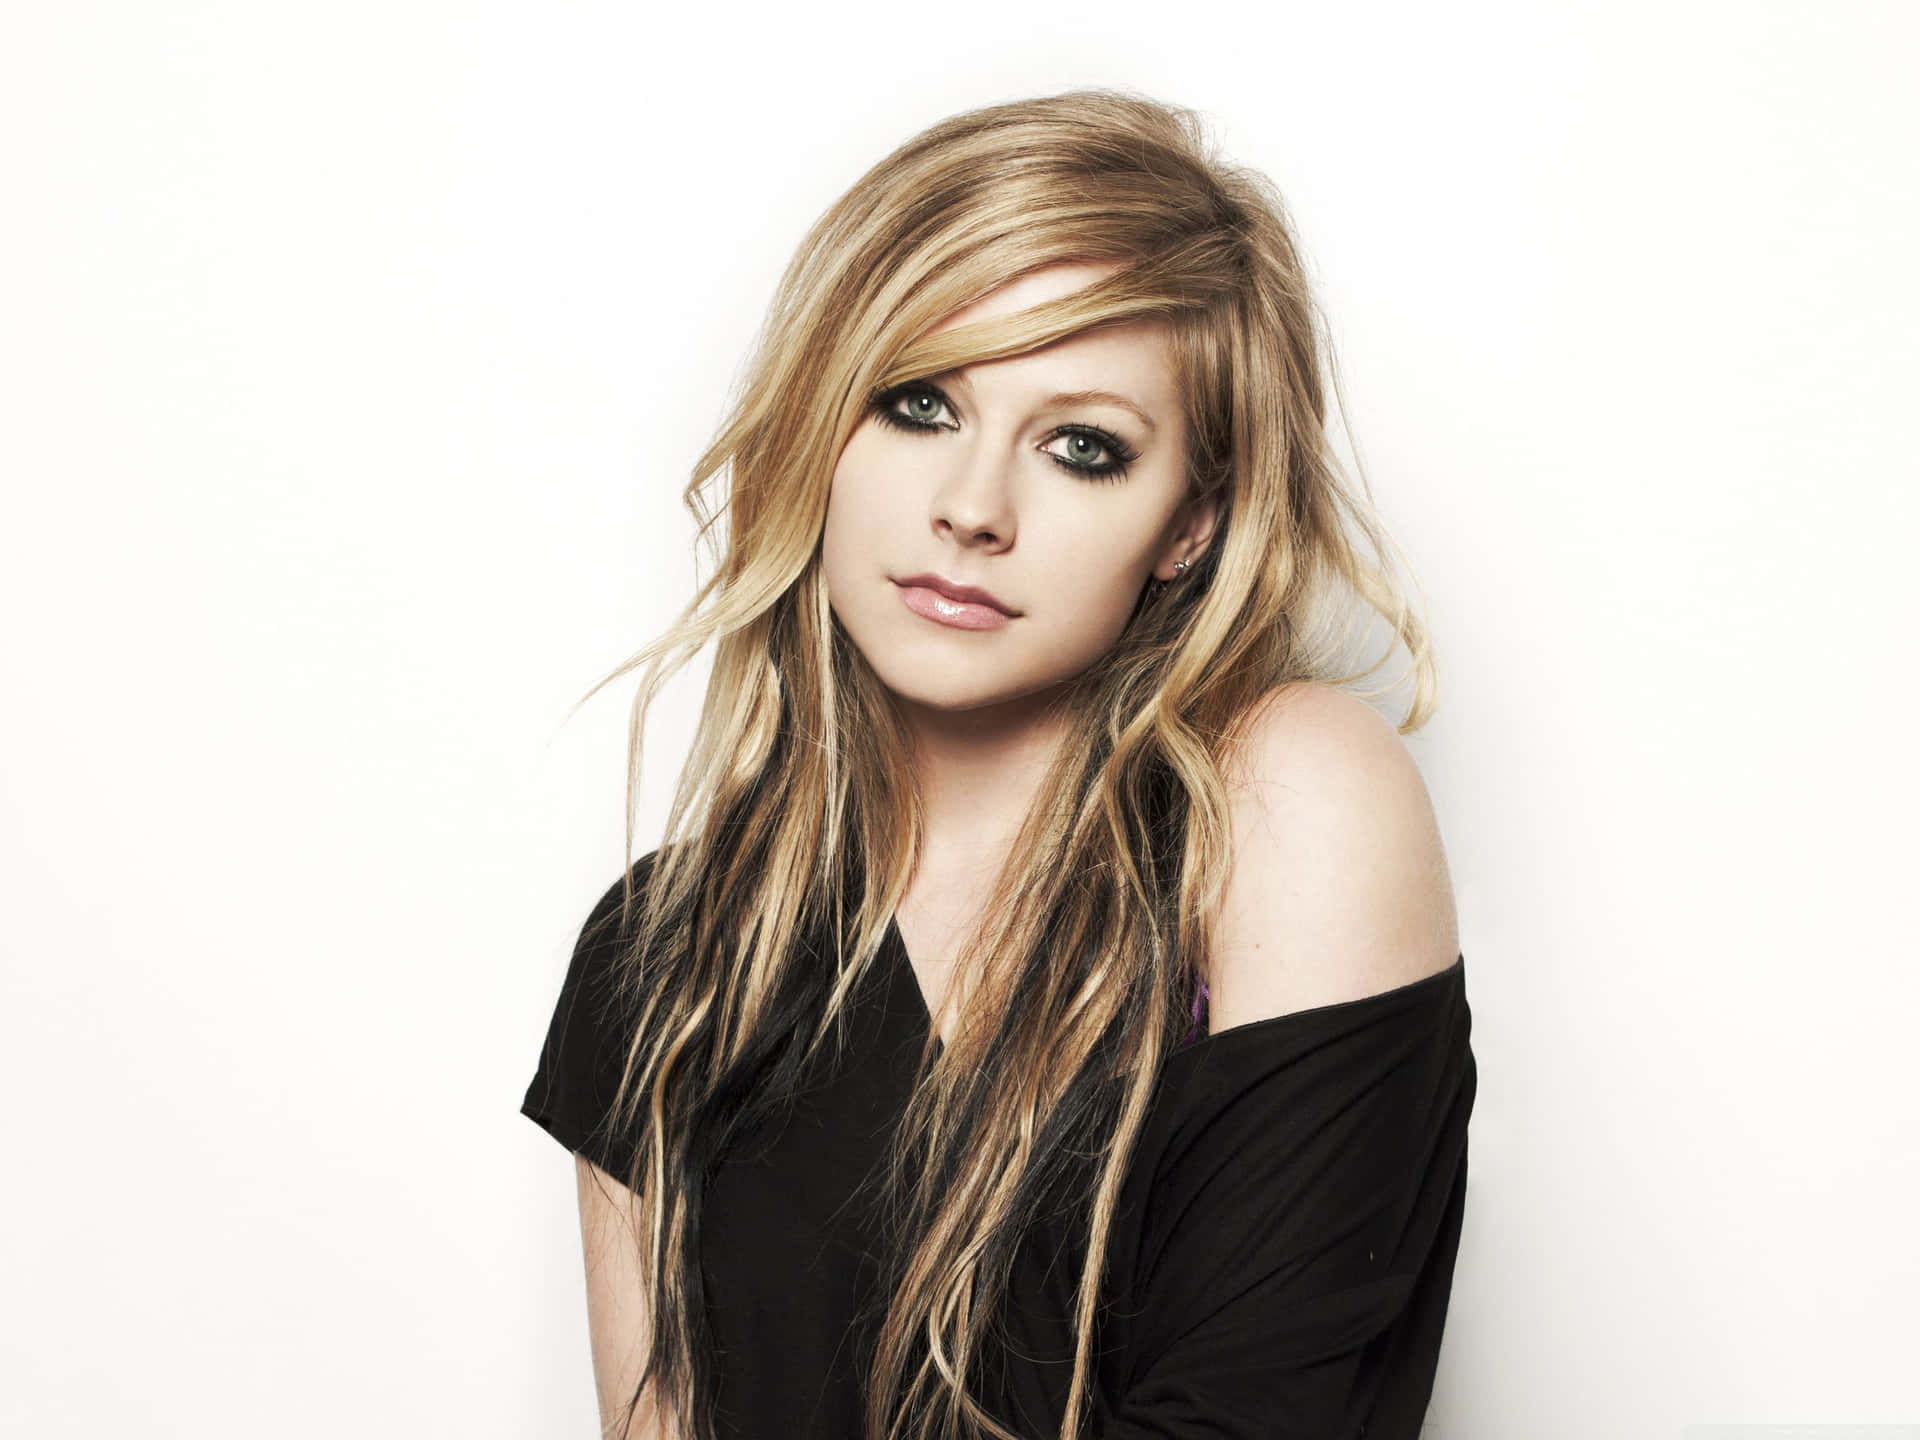 Sängerinund Songwriterin Avril Lavigne